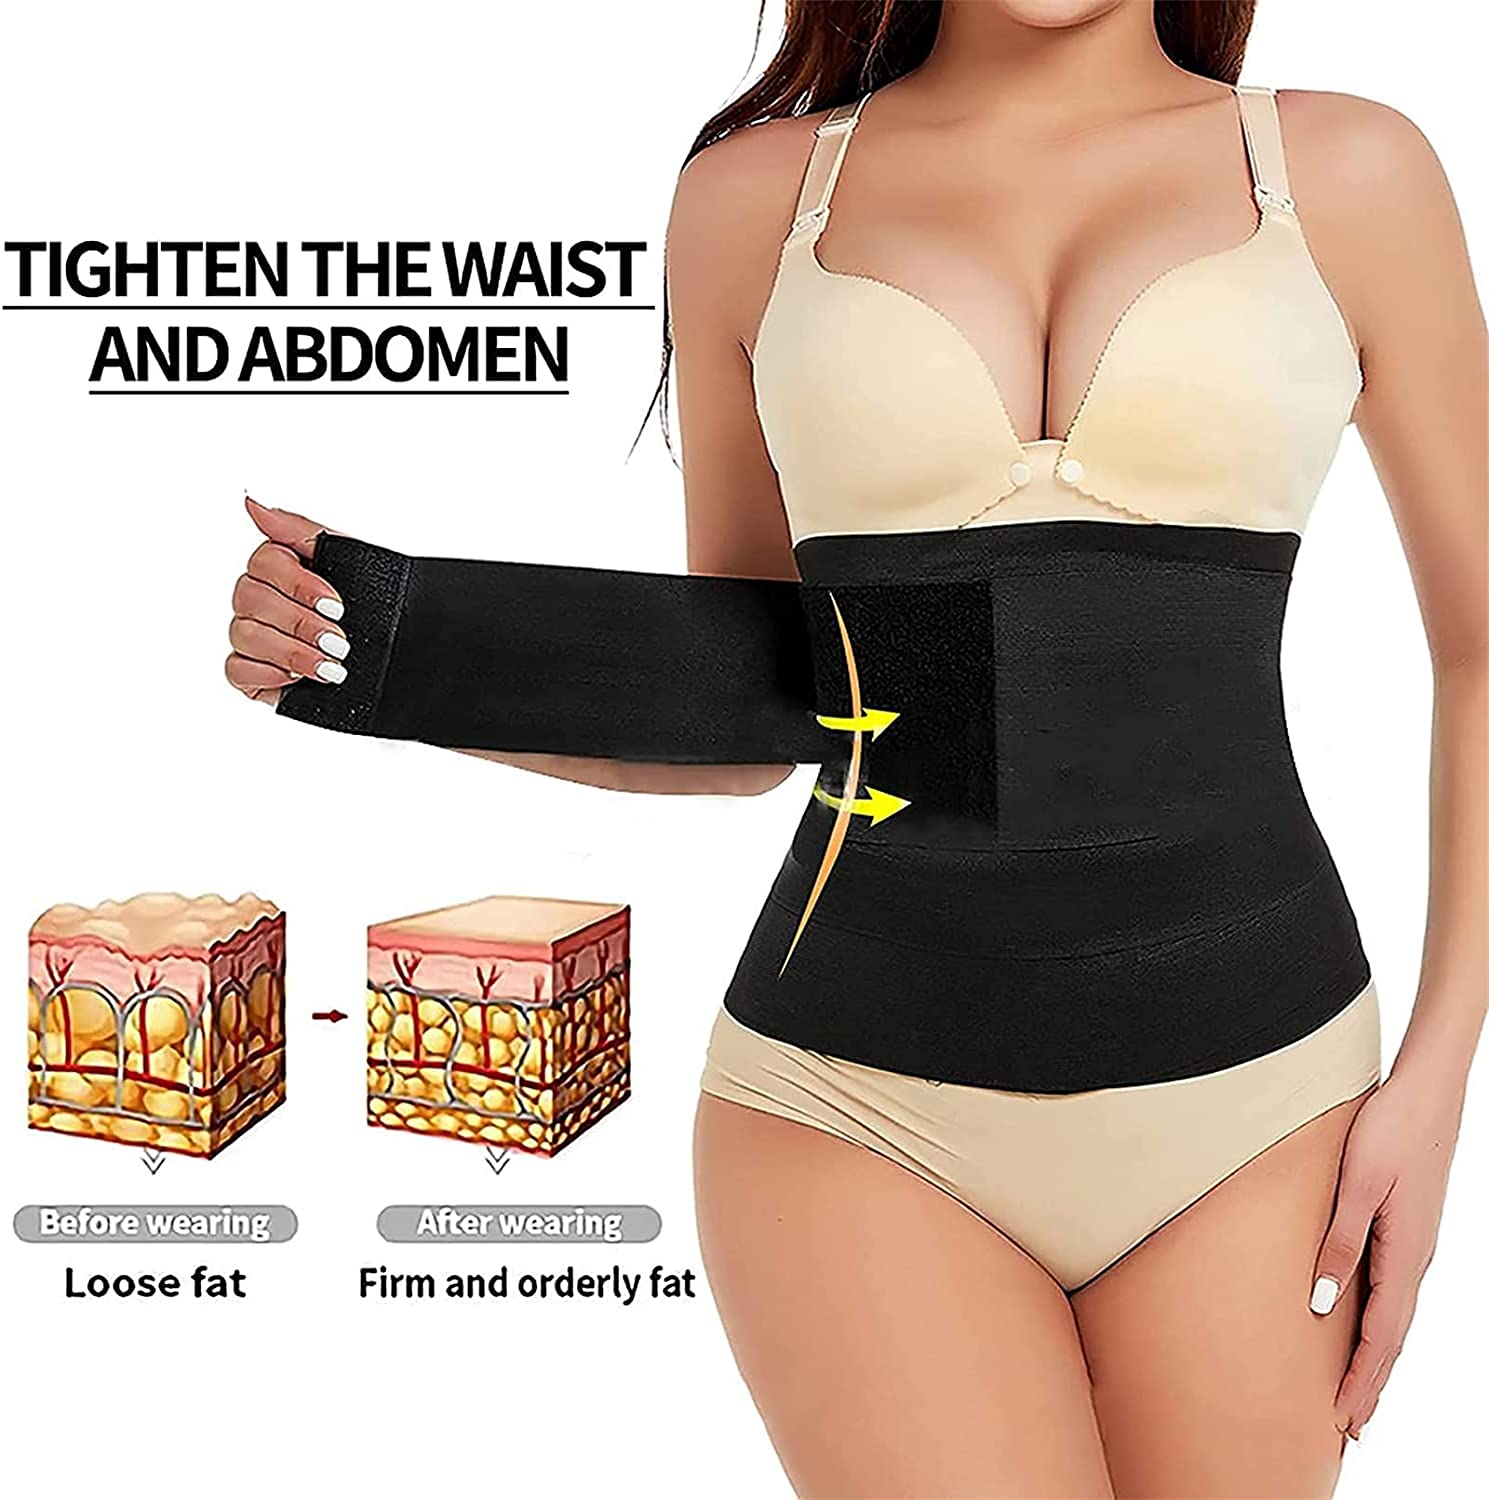 Waist/tummy wrap